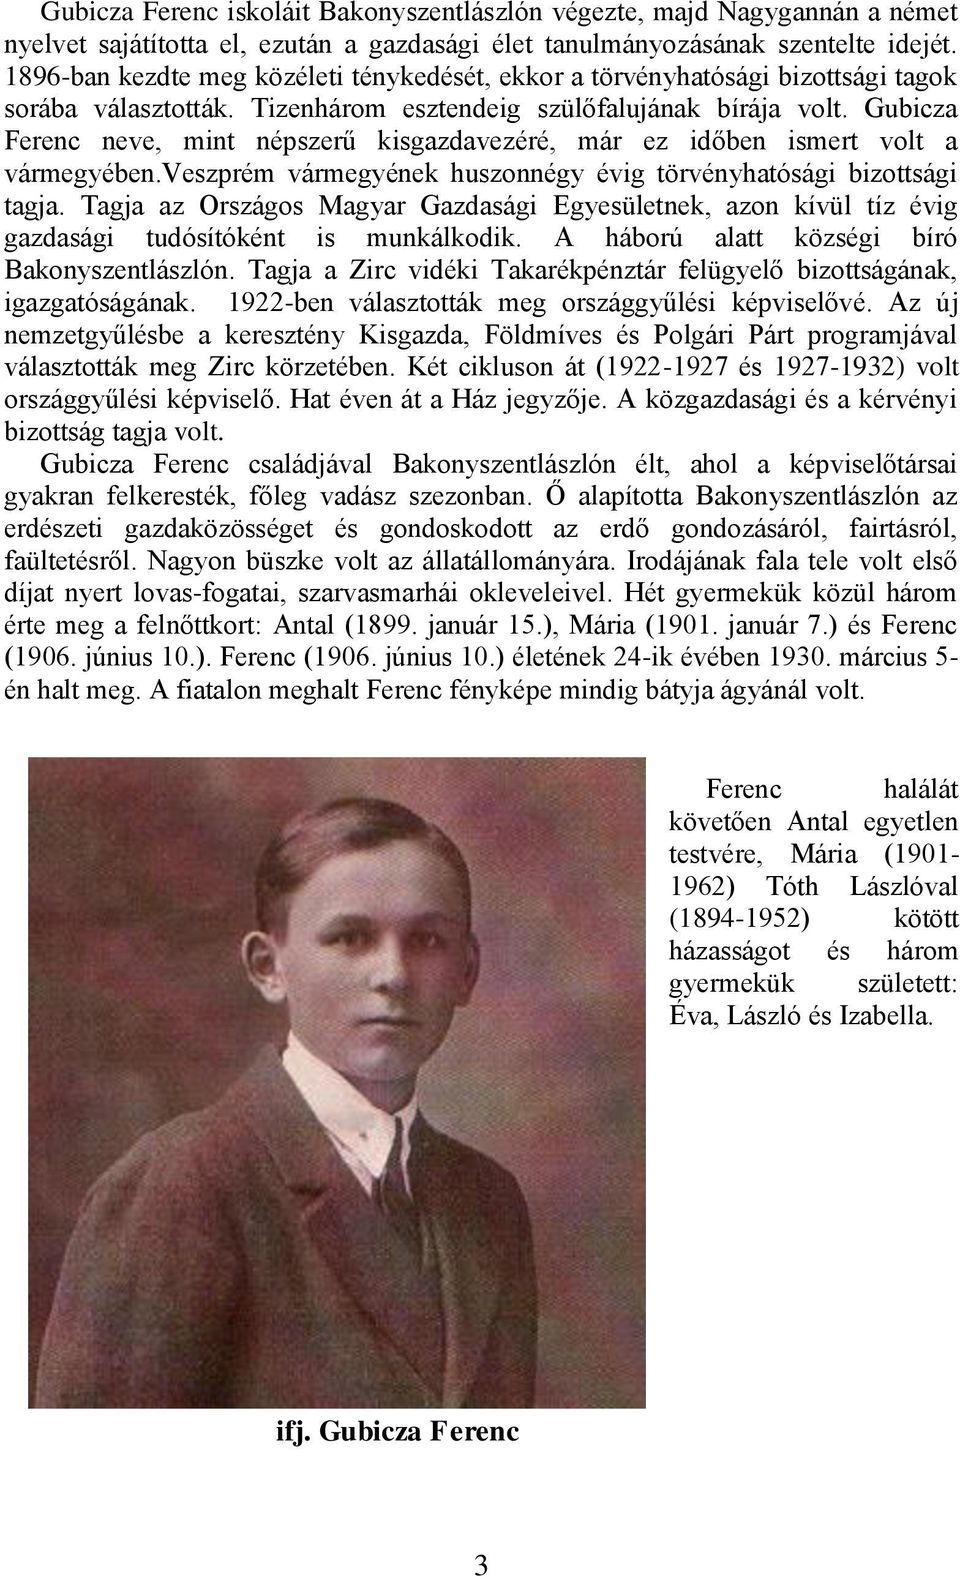 Gubicza Ferenc neve, mint népszerű kisgazdavezéré, már ez időben ismert volt a vármegyében.veszprém vármegyének huszonnégy évig törvényhatósági bizottsági tagja.